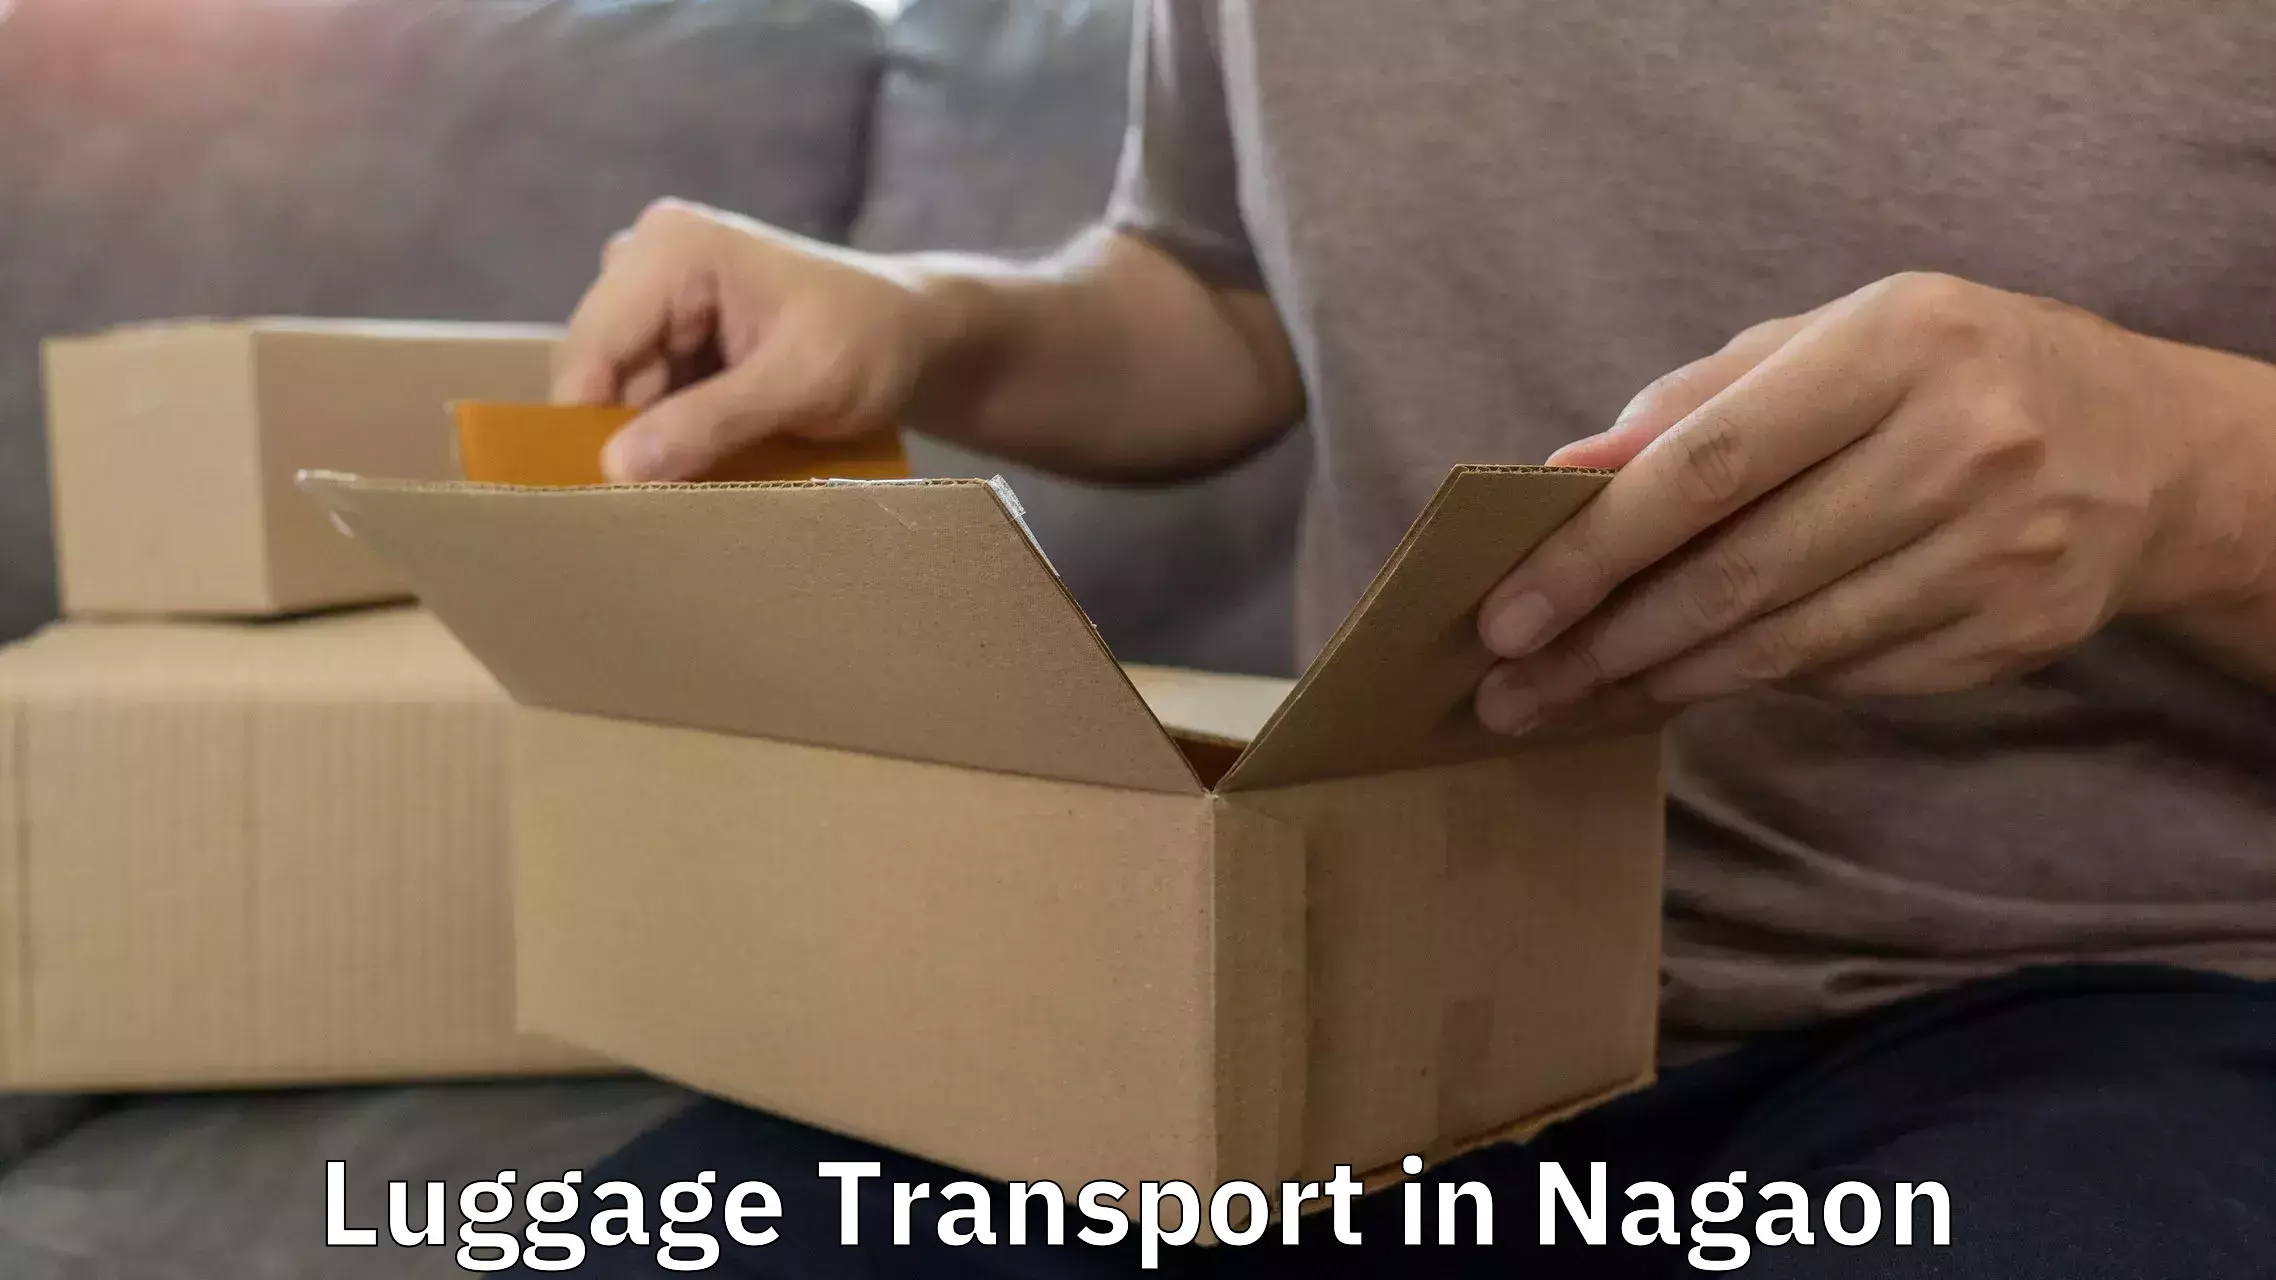 Express baggage shipping in Nagaon